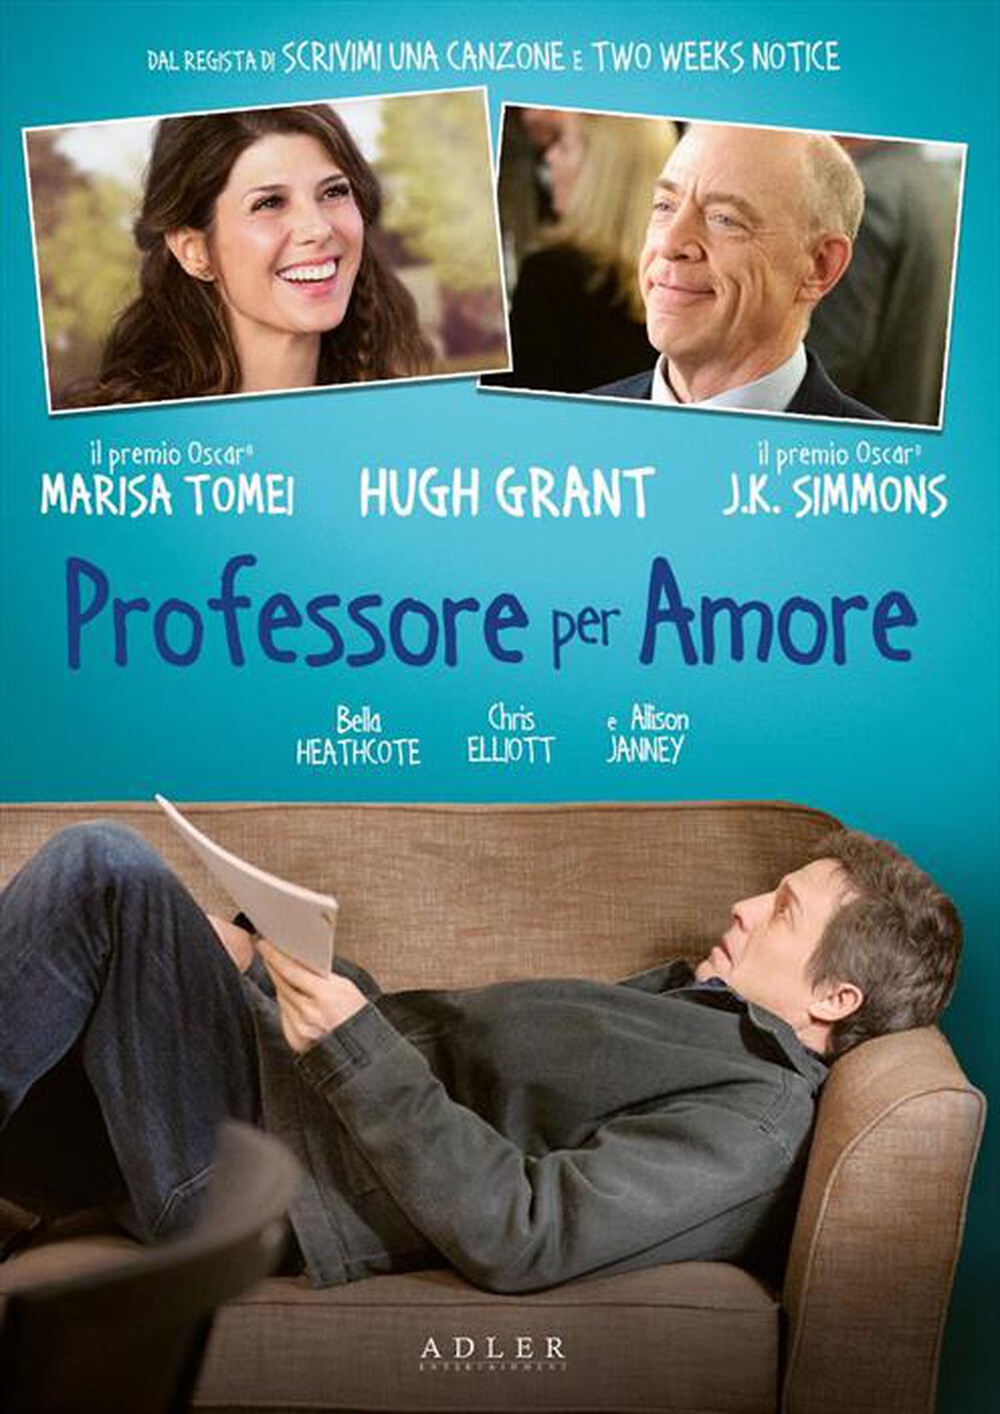 "Adler Entertainment - Professore Per Amore"